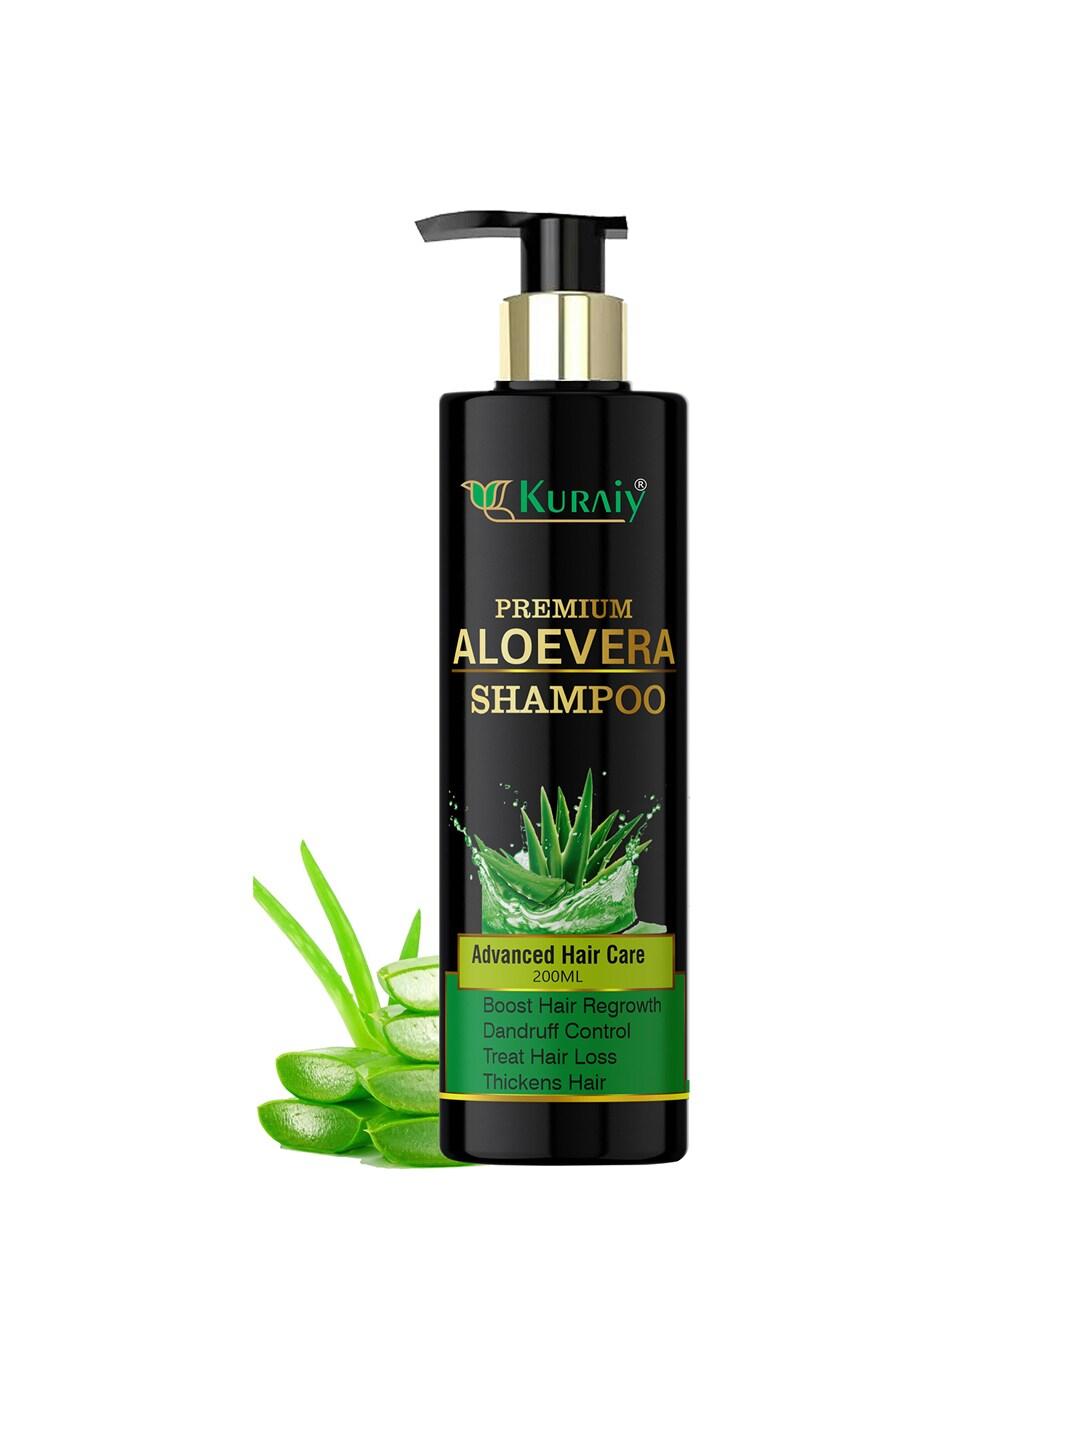 KURAIY Premium Advanced Hair Care Natural Aloevera Shampoo To Boost Hair Regrowth - 200ml